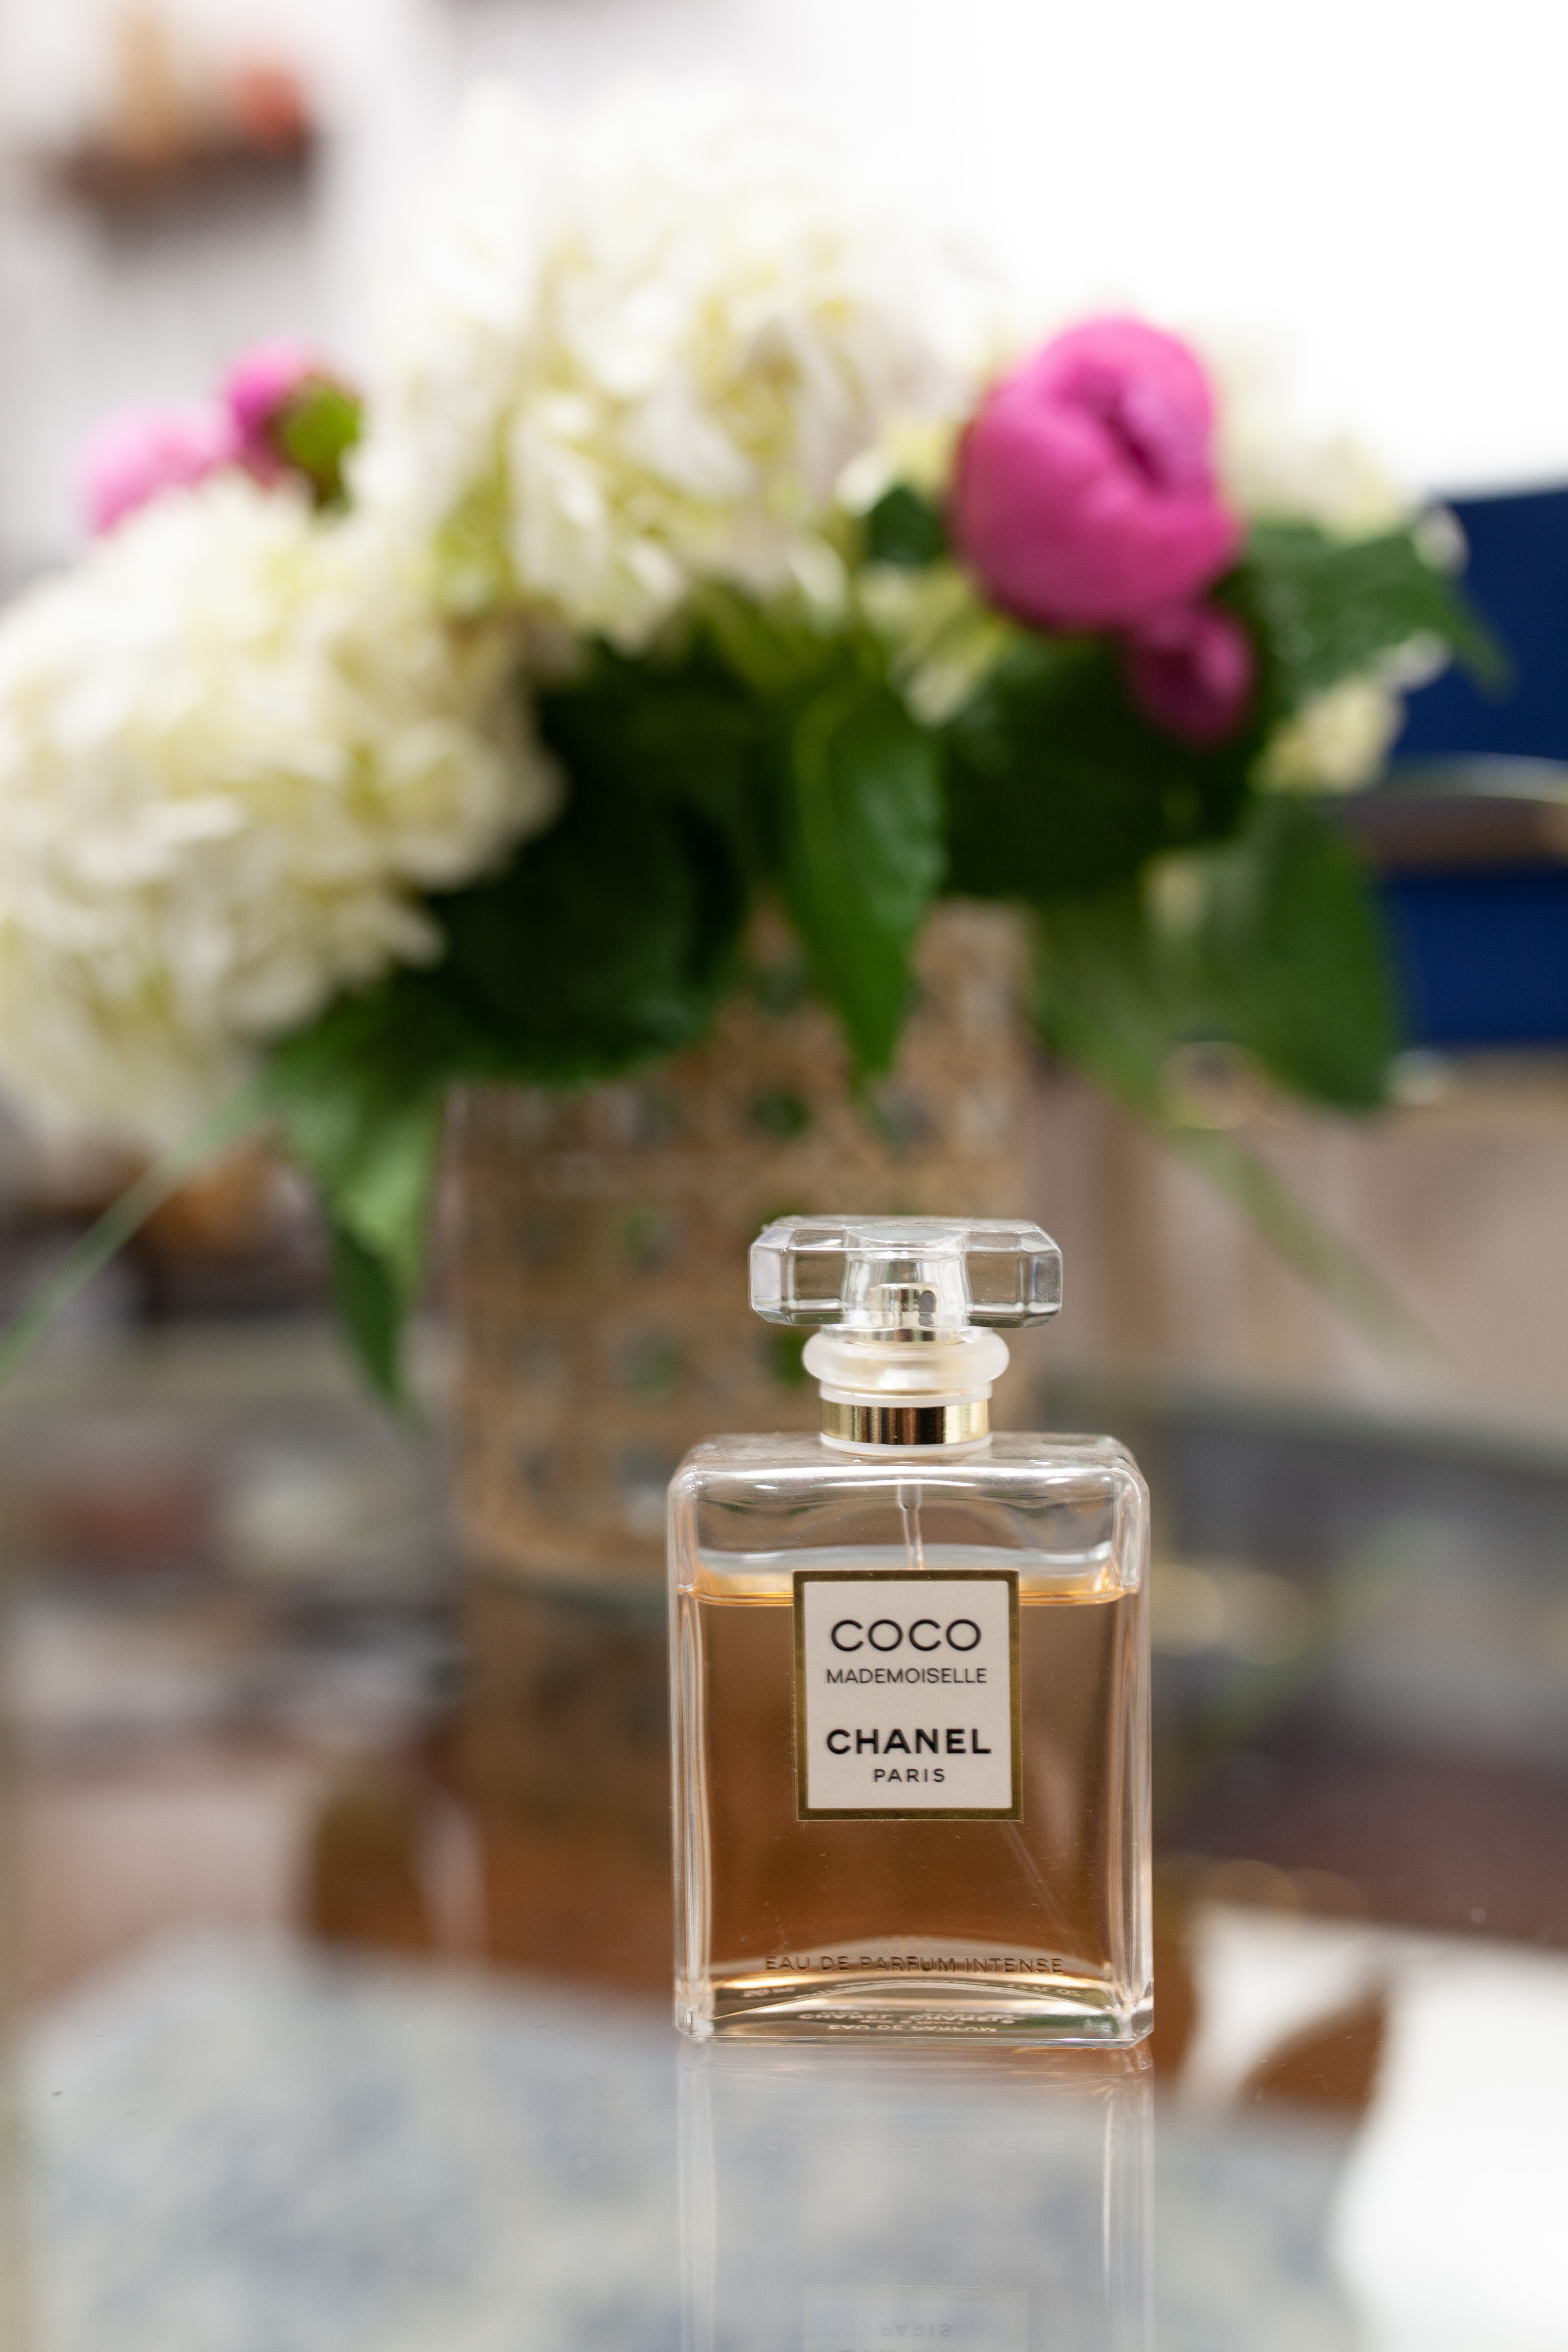 Chanel coco mademoiselle perfume bottle